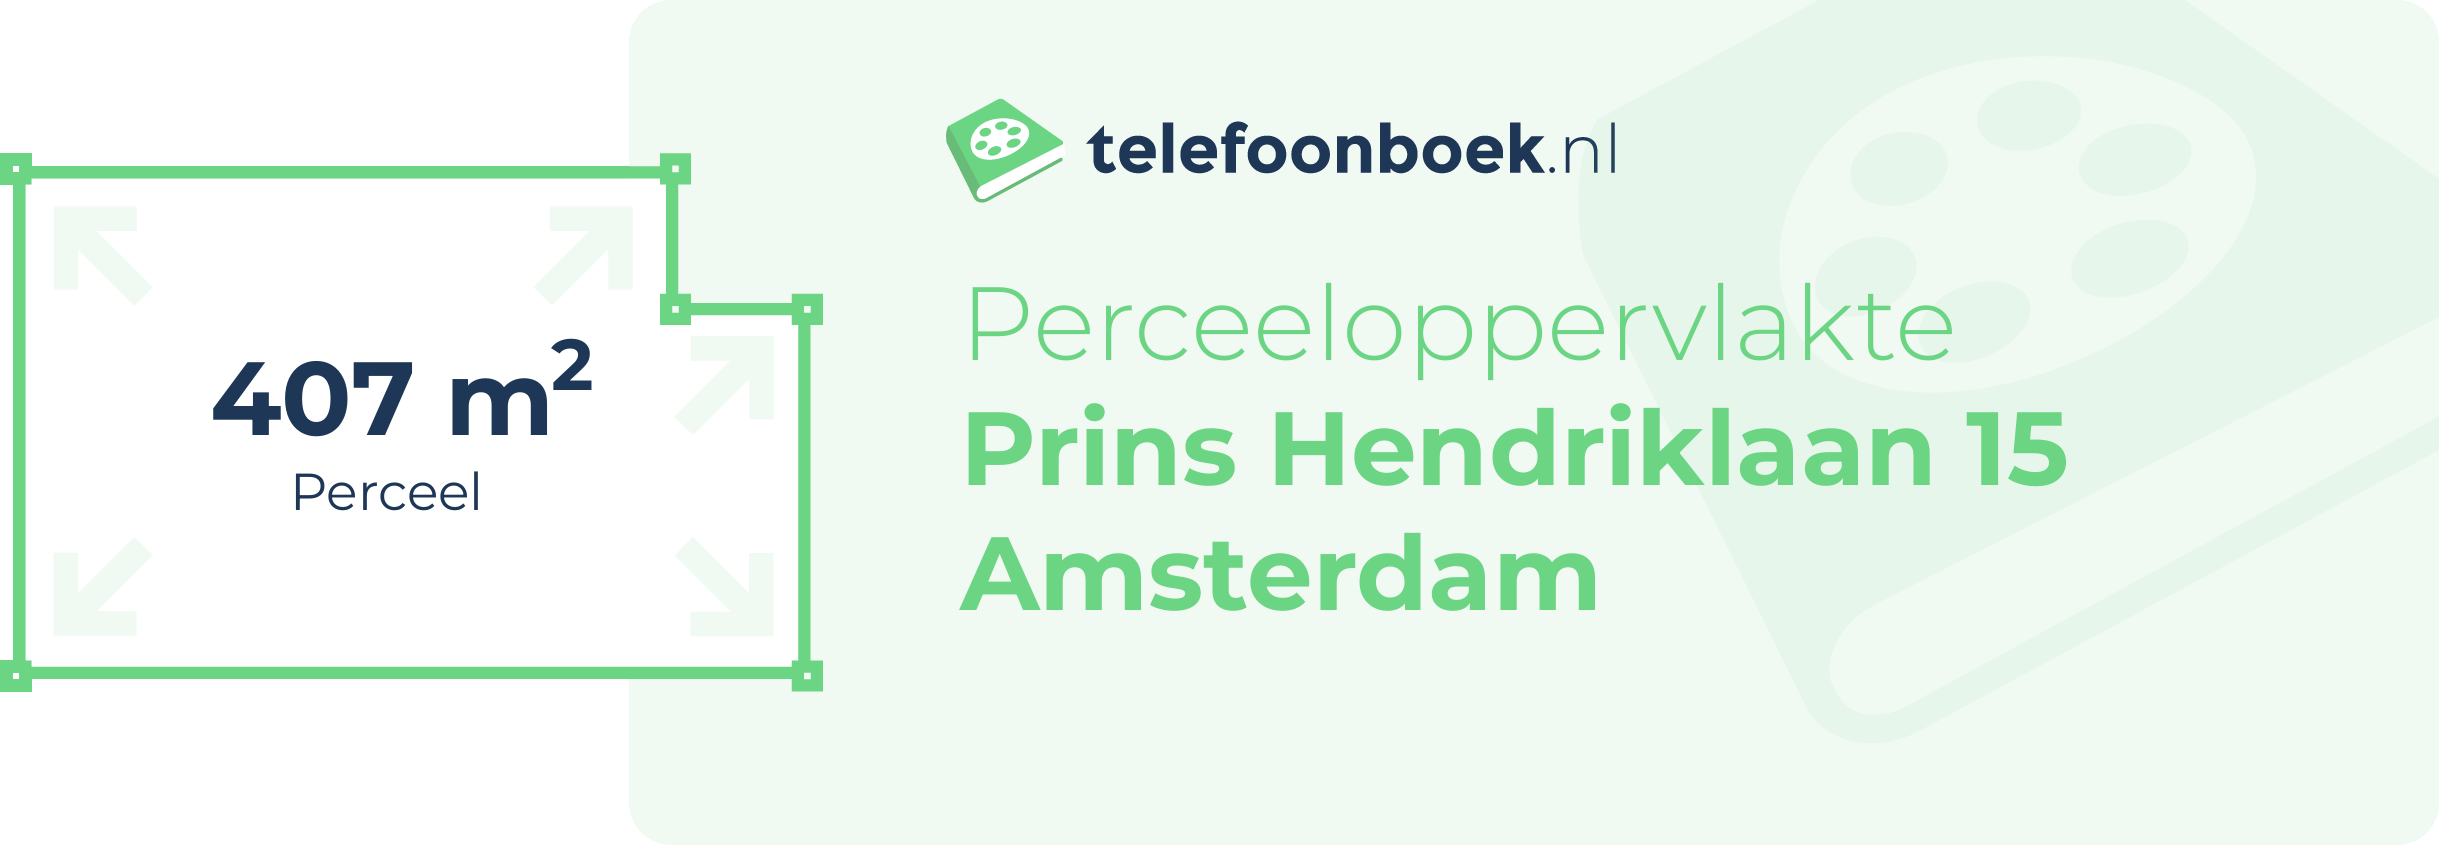 Perceeloppervlakte Prins Hendriklaan 15 Amsterdam